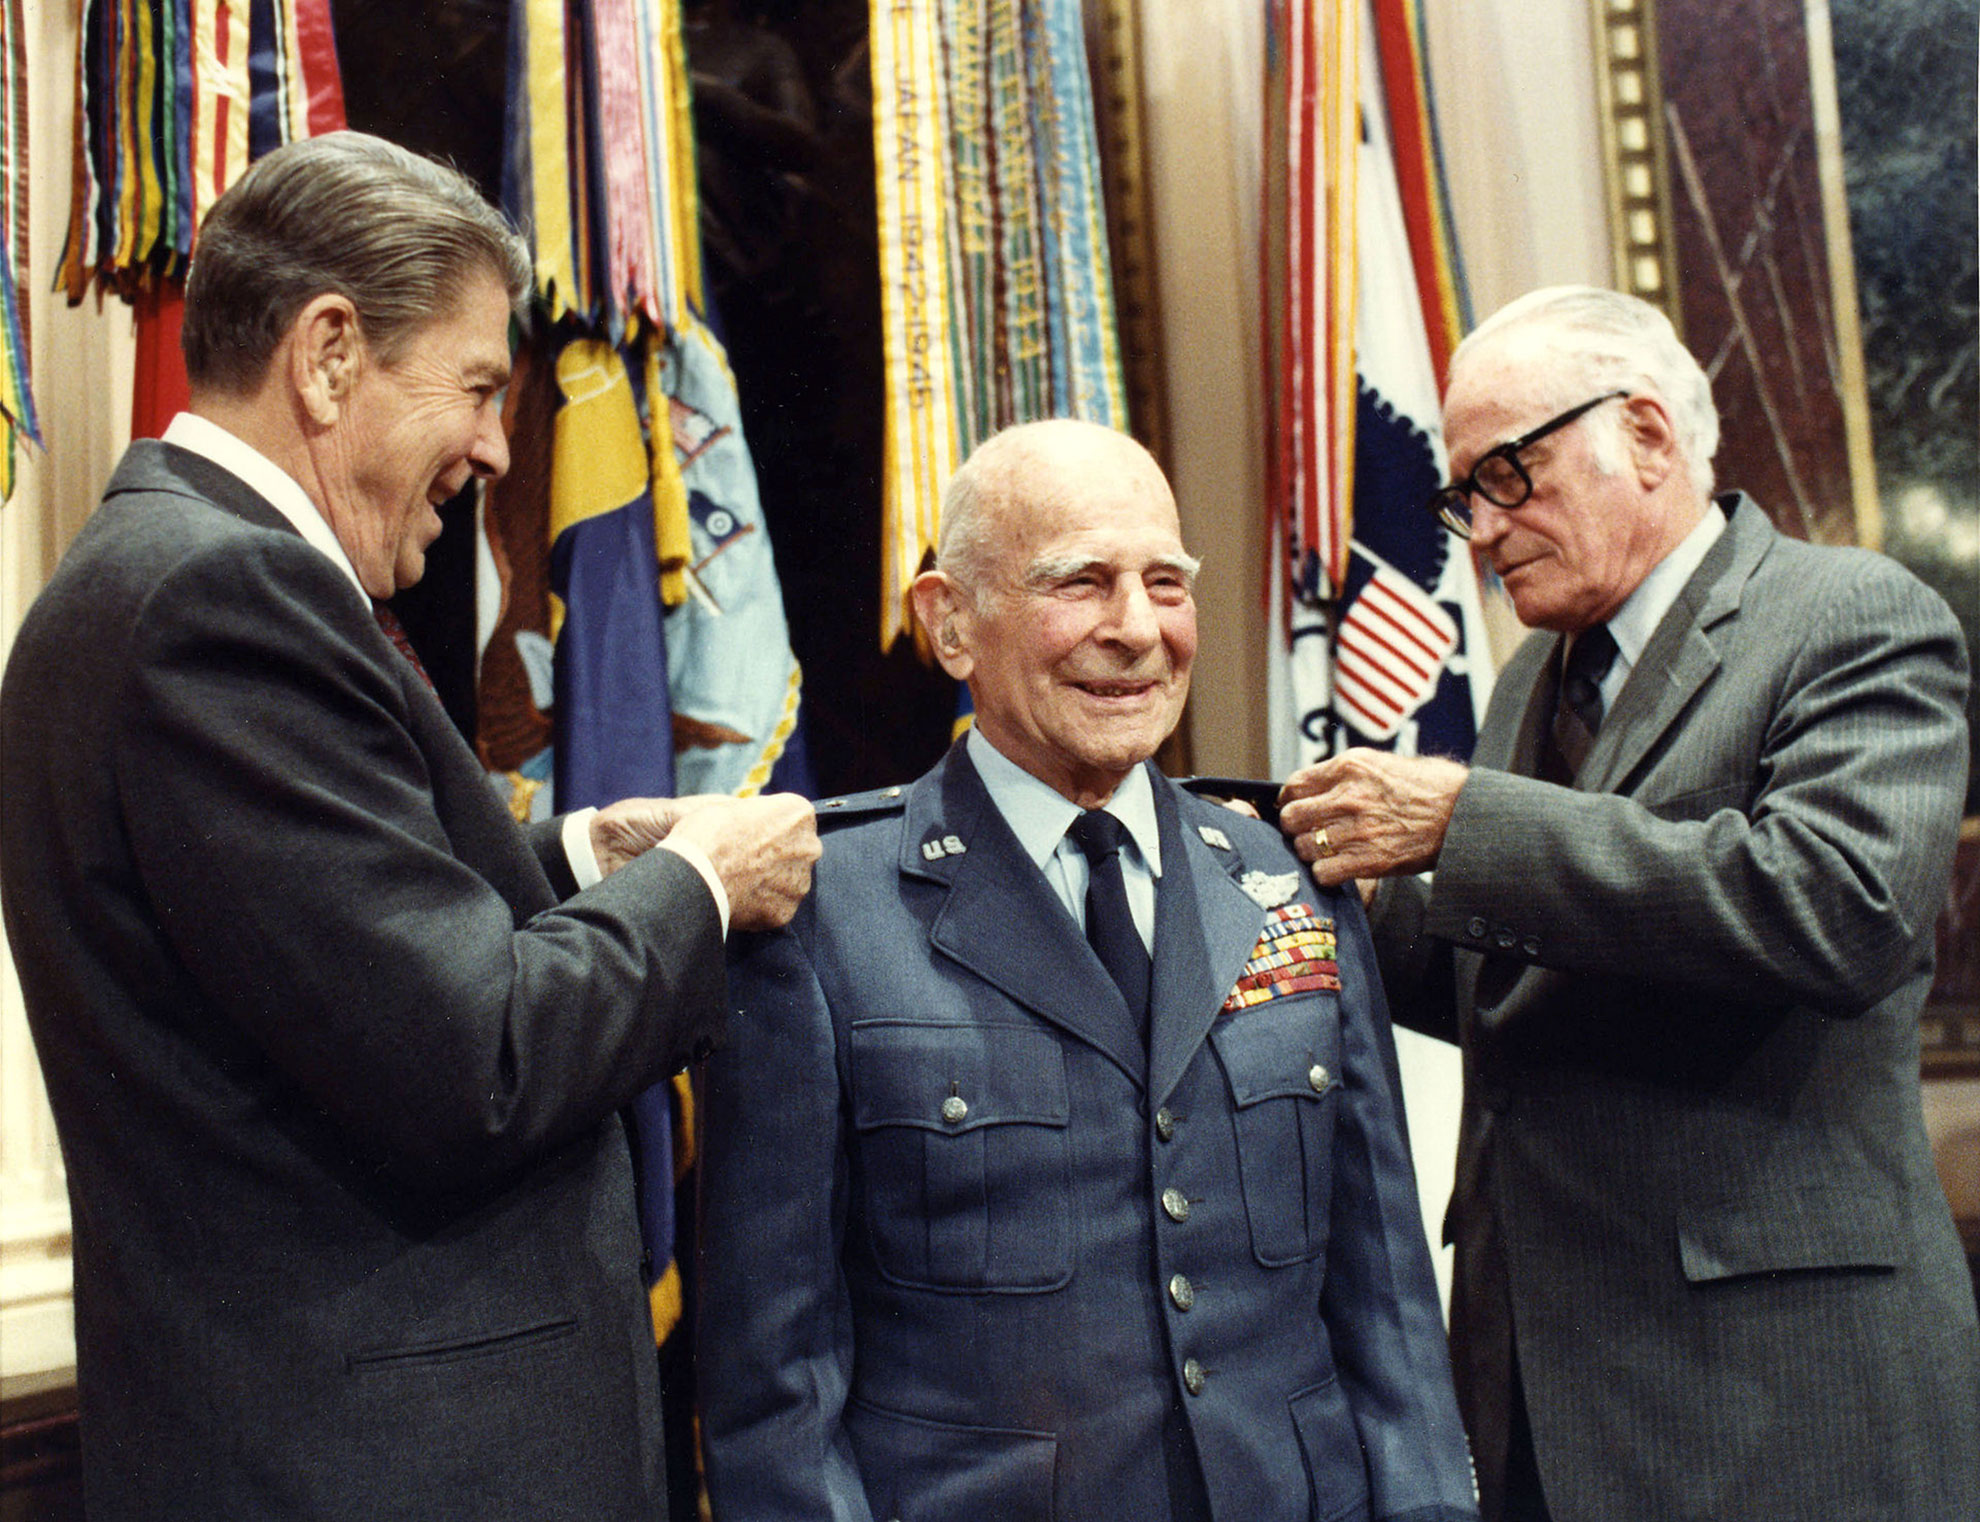 Le président Reagan et le sénateur Barry Goldwater épinglent une 4e étoile au général de réserve Doolittle le 10 avril 1985 -- Photo White House © Bill Fritz-Patrick. -